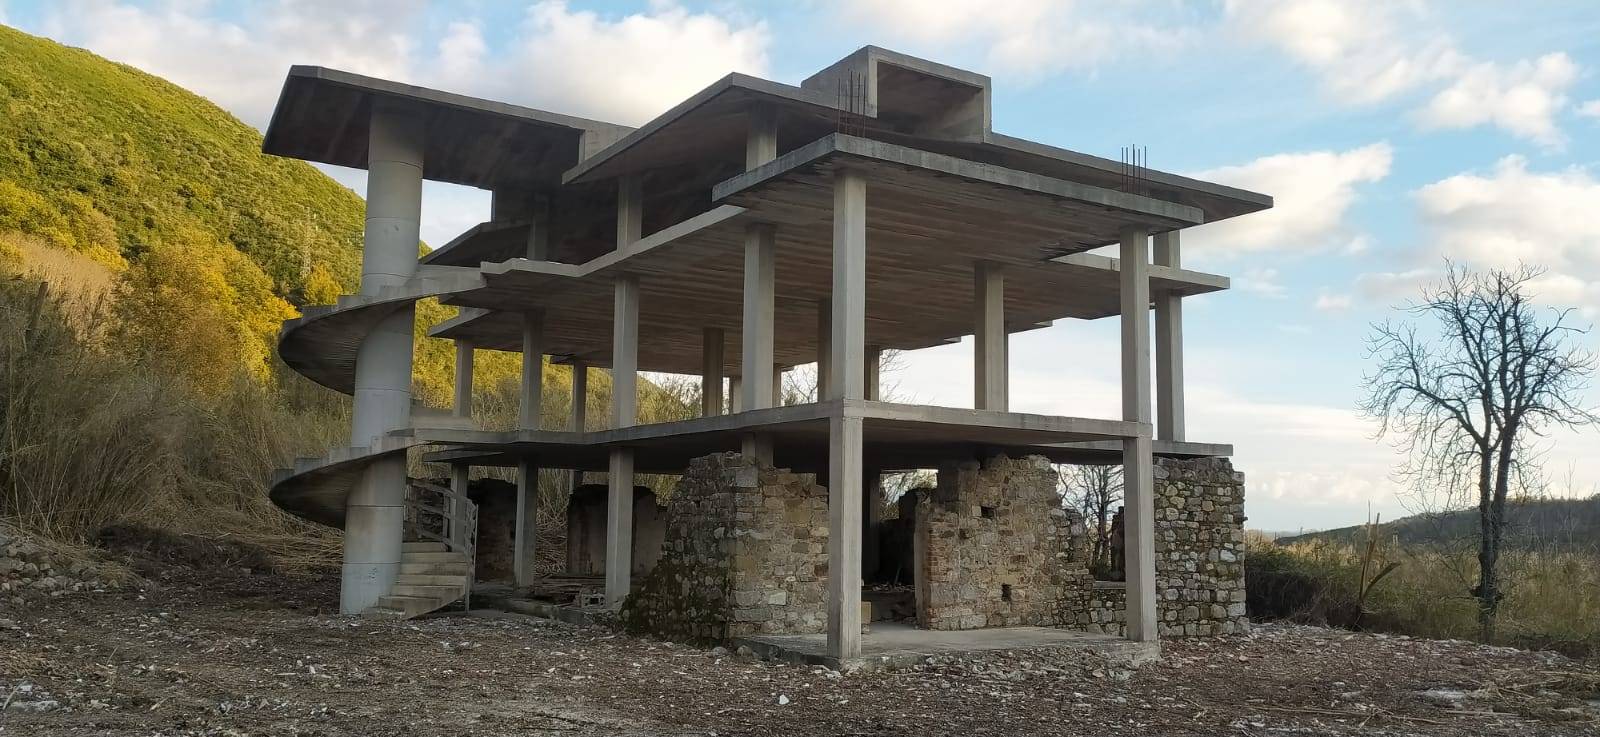 Villa a Schiera in vendita a Torre Orsaia, 3 locali, prezzo € 180.000 | PortaleAgenzieImmobiliari.it